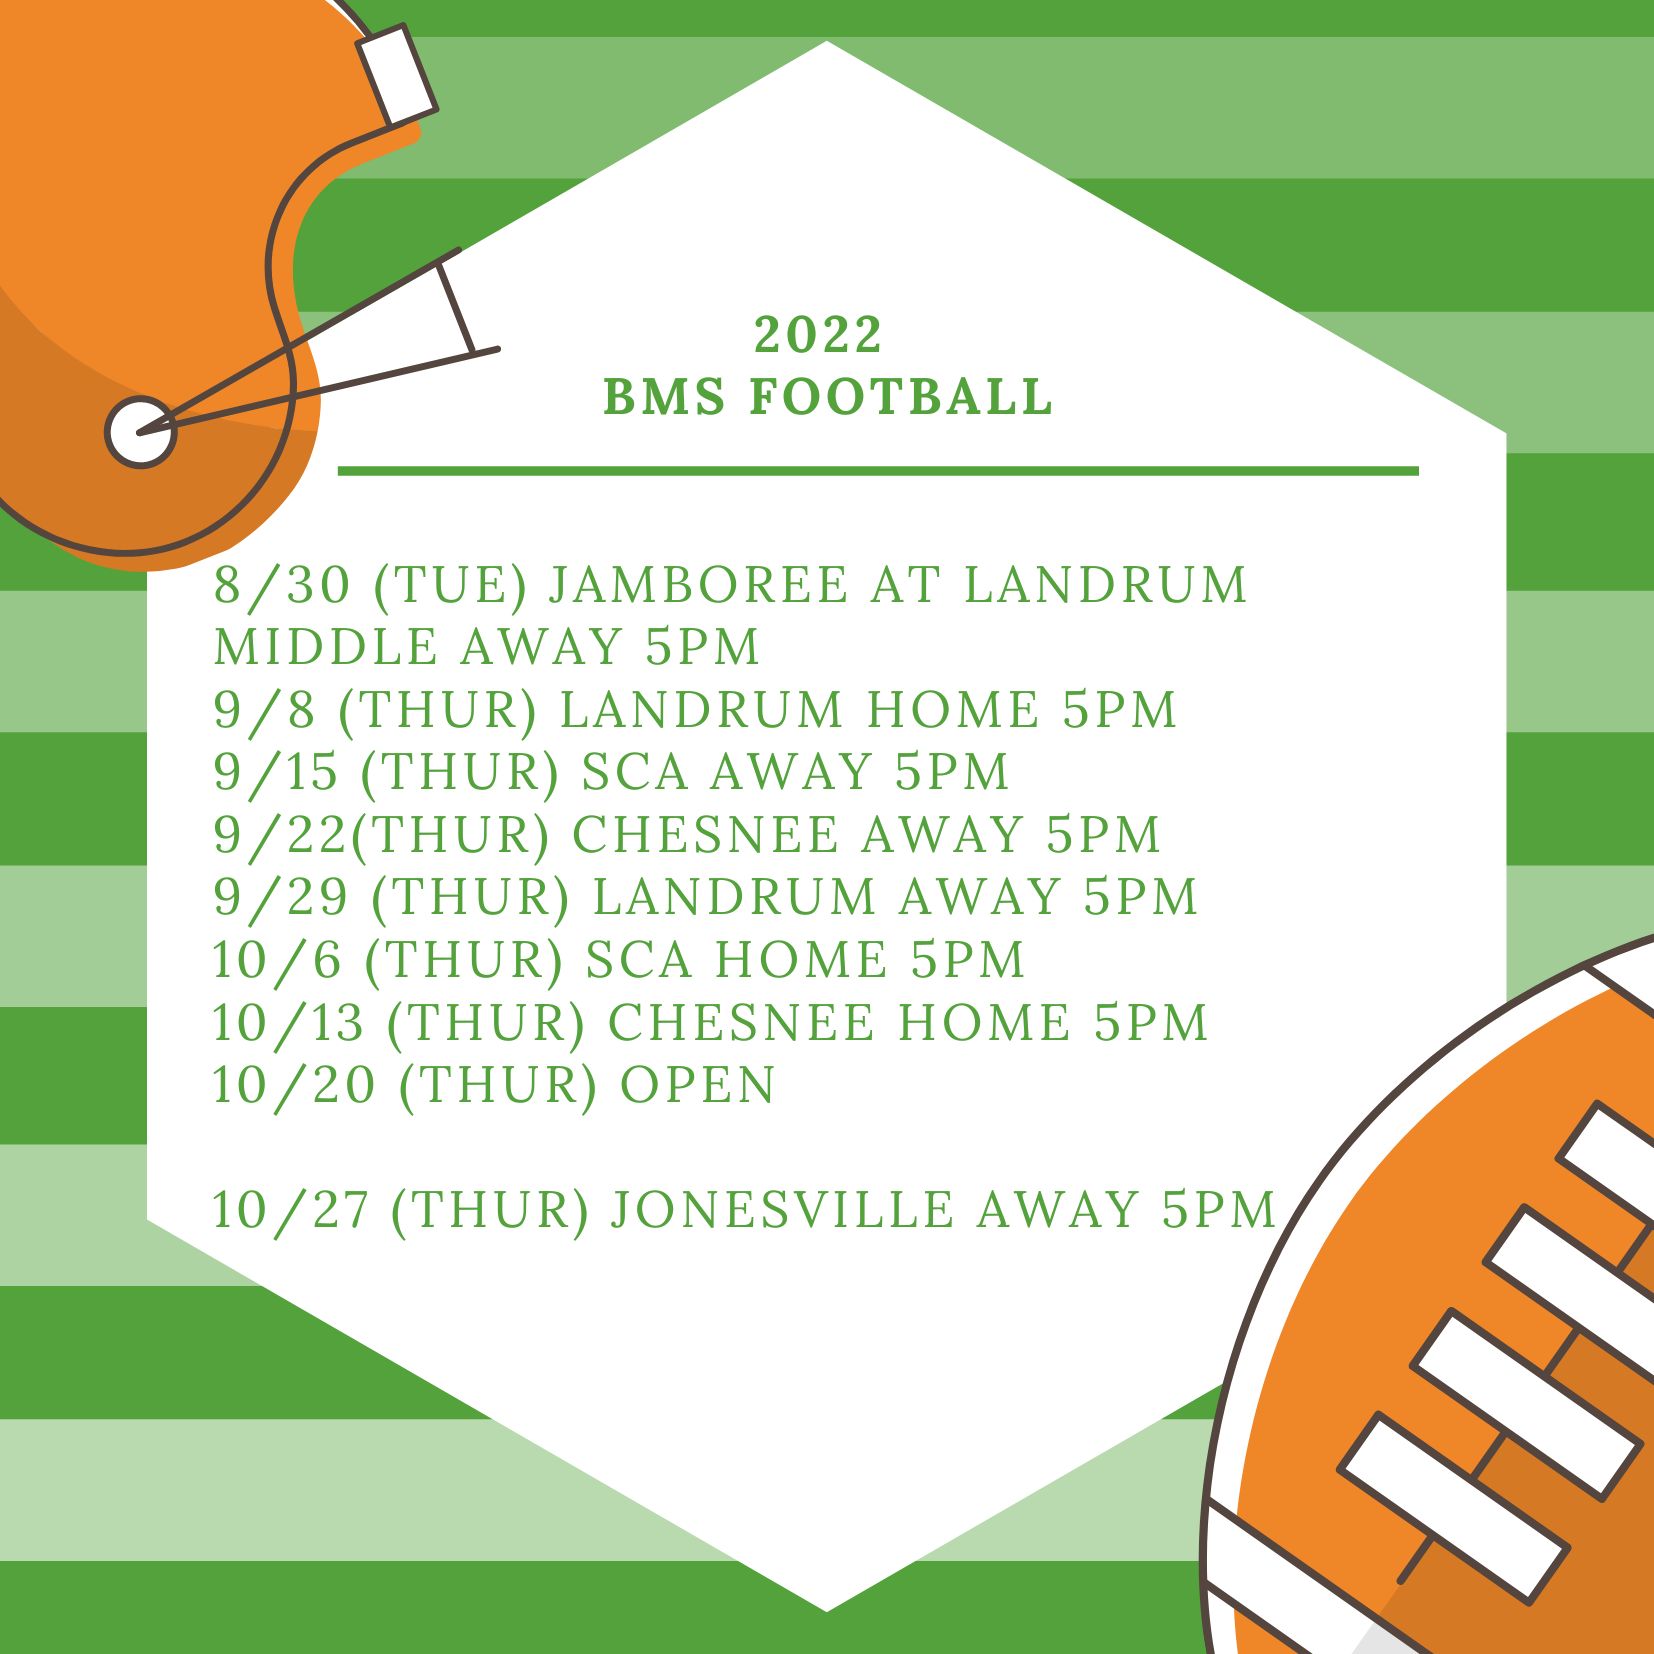 2022 BMS football schedule